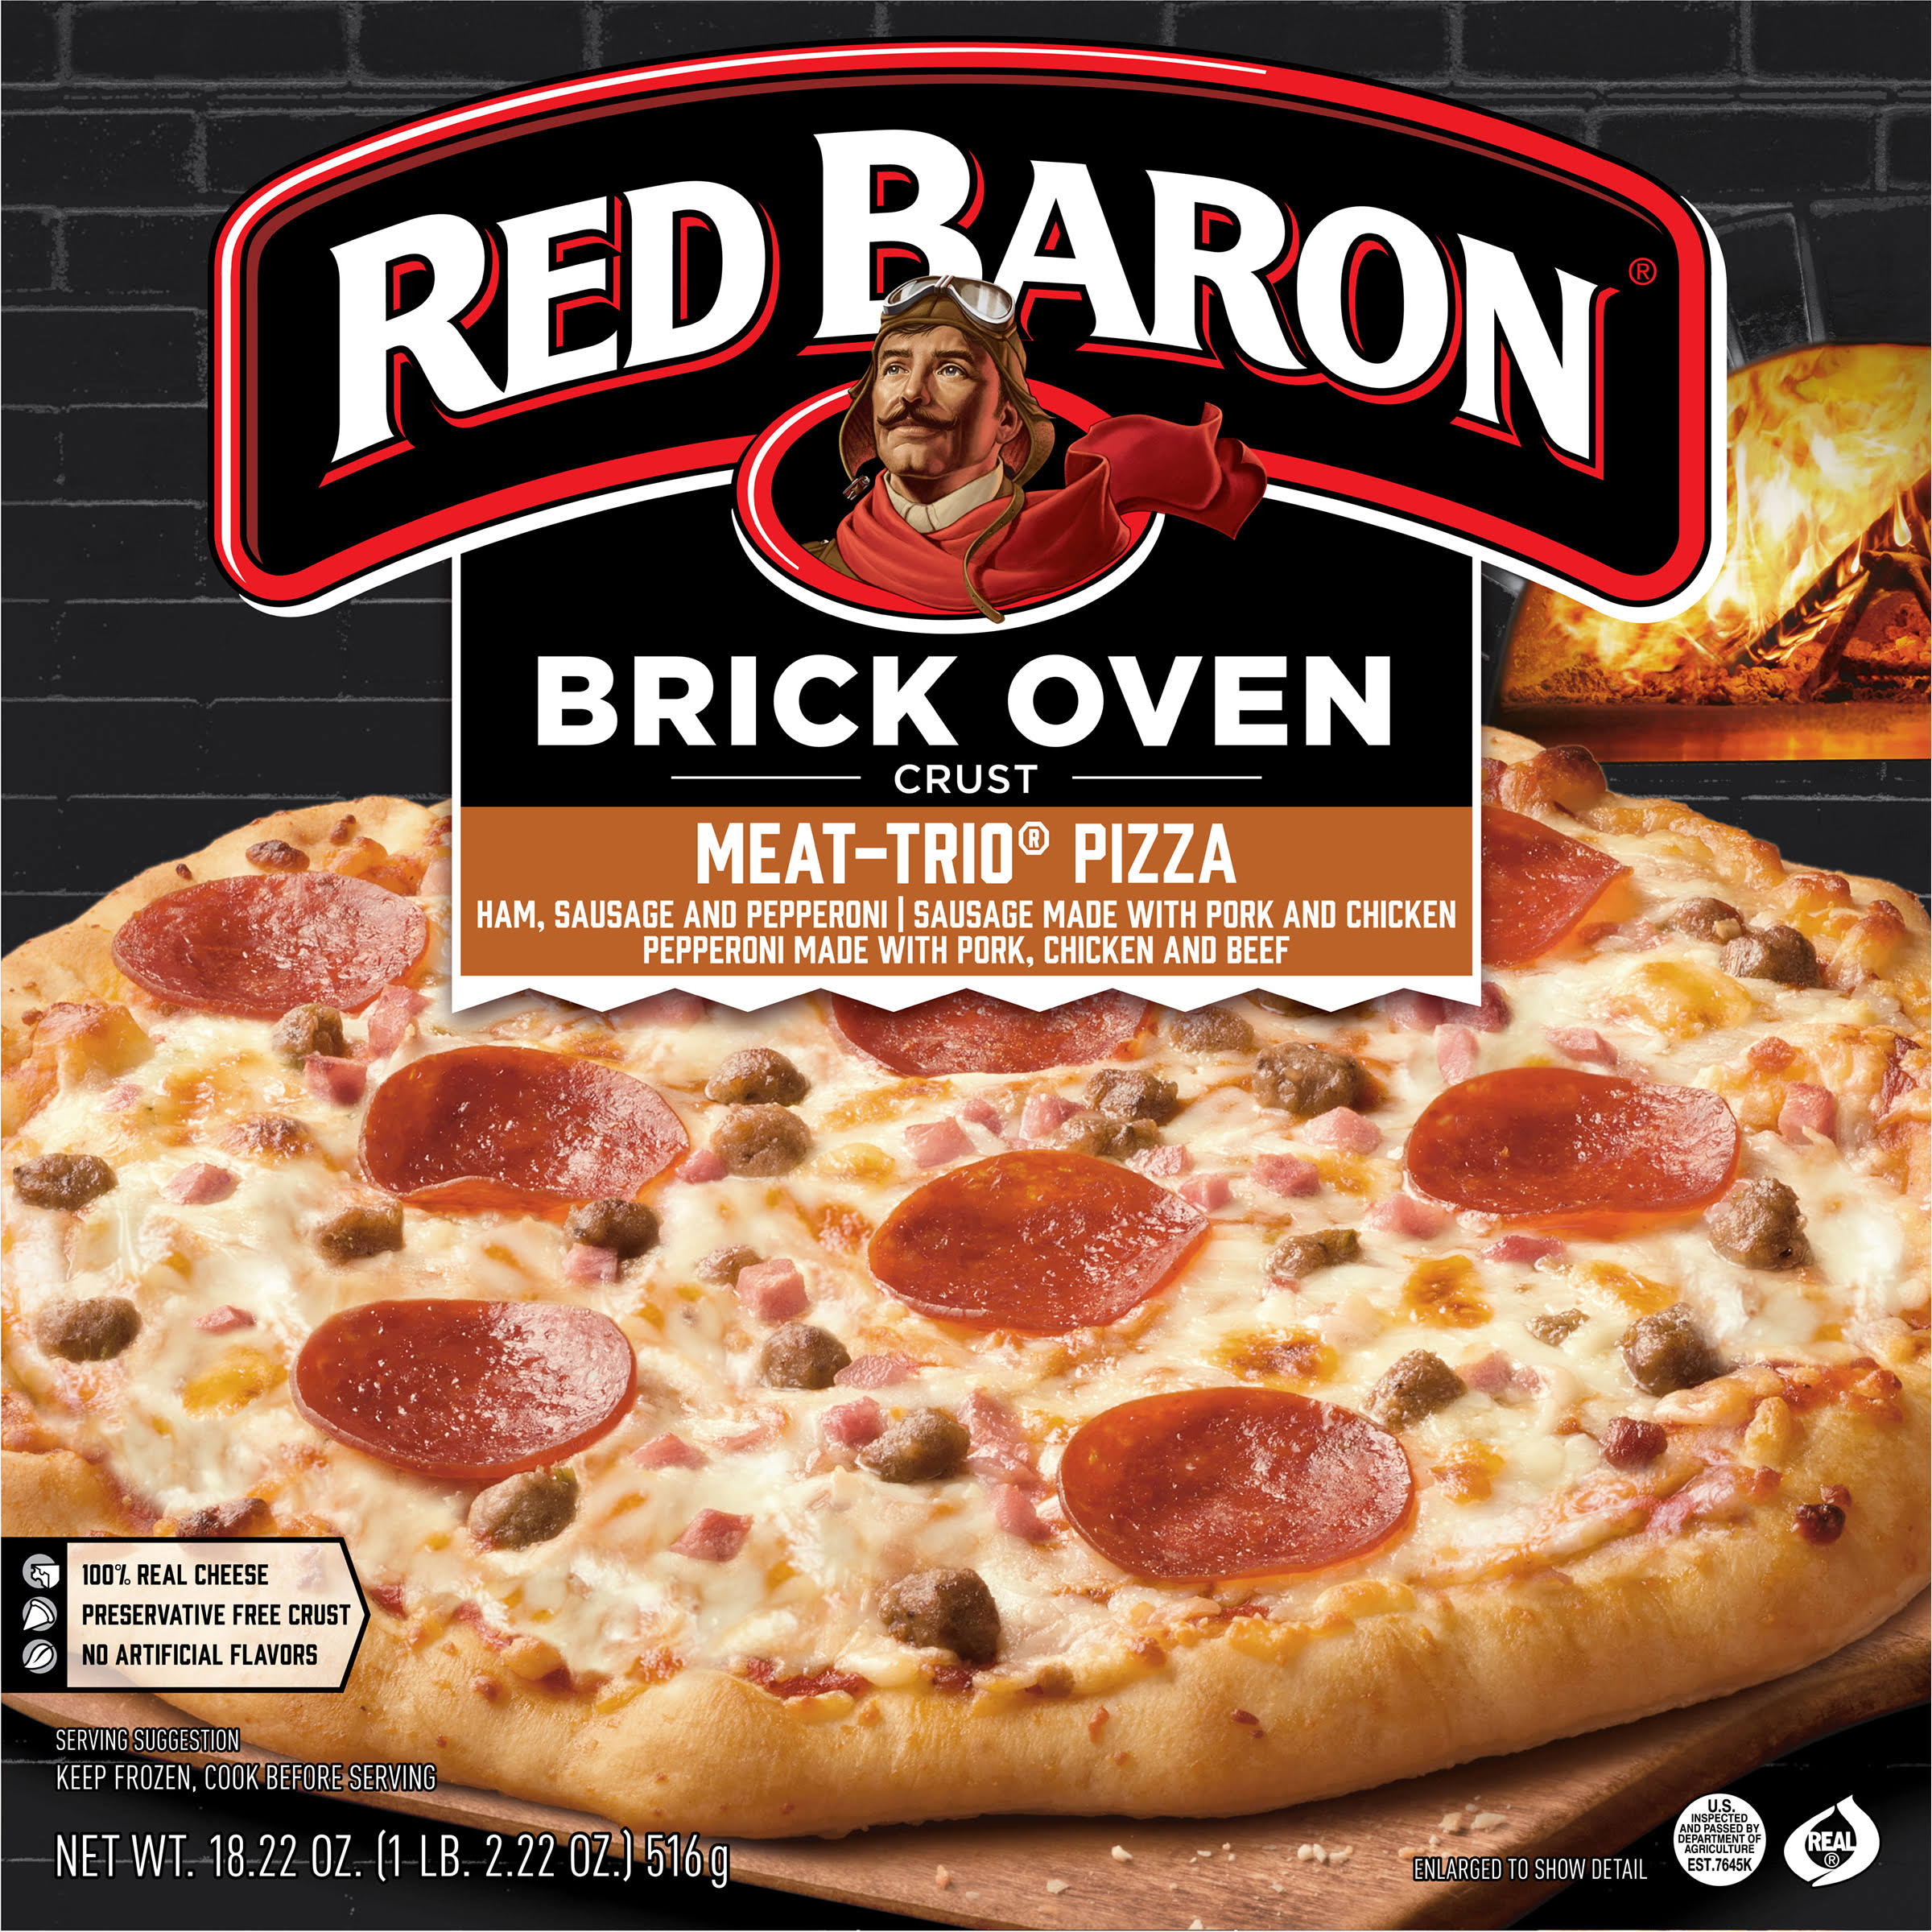 Red Baron Brick Oven Crust Meat-Trio Pizza - 18.22oz